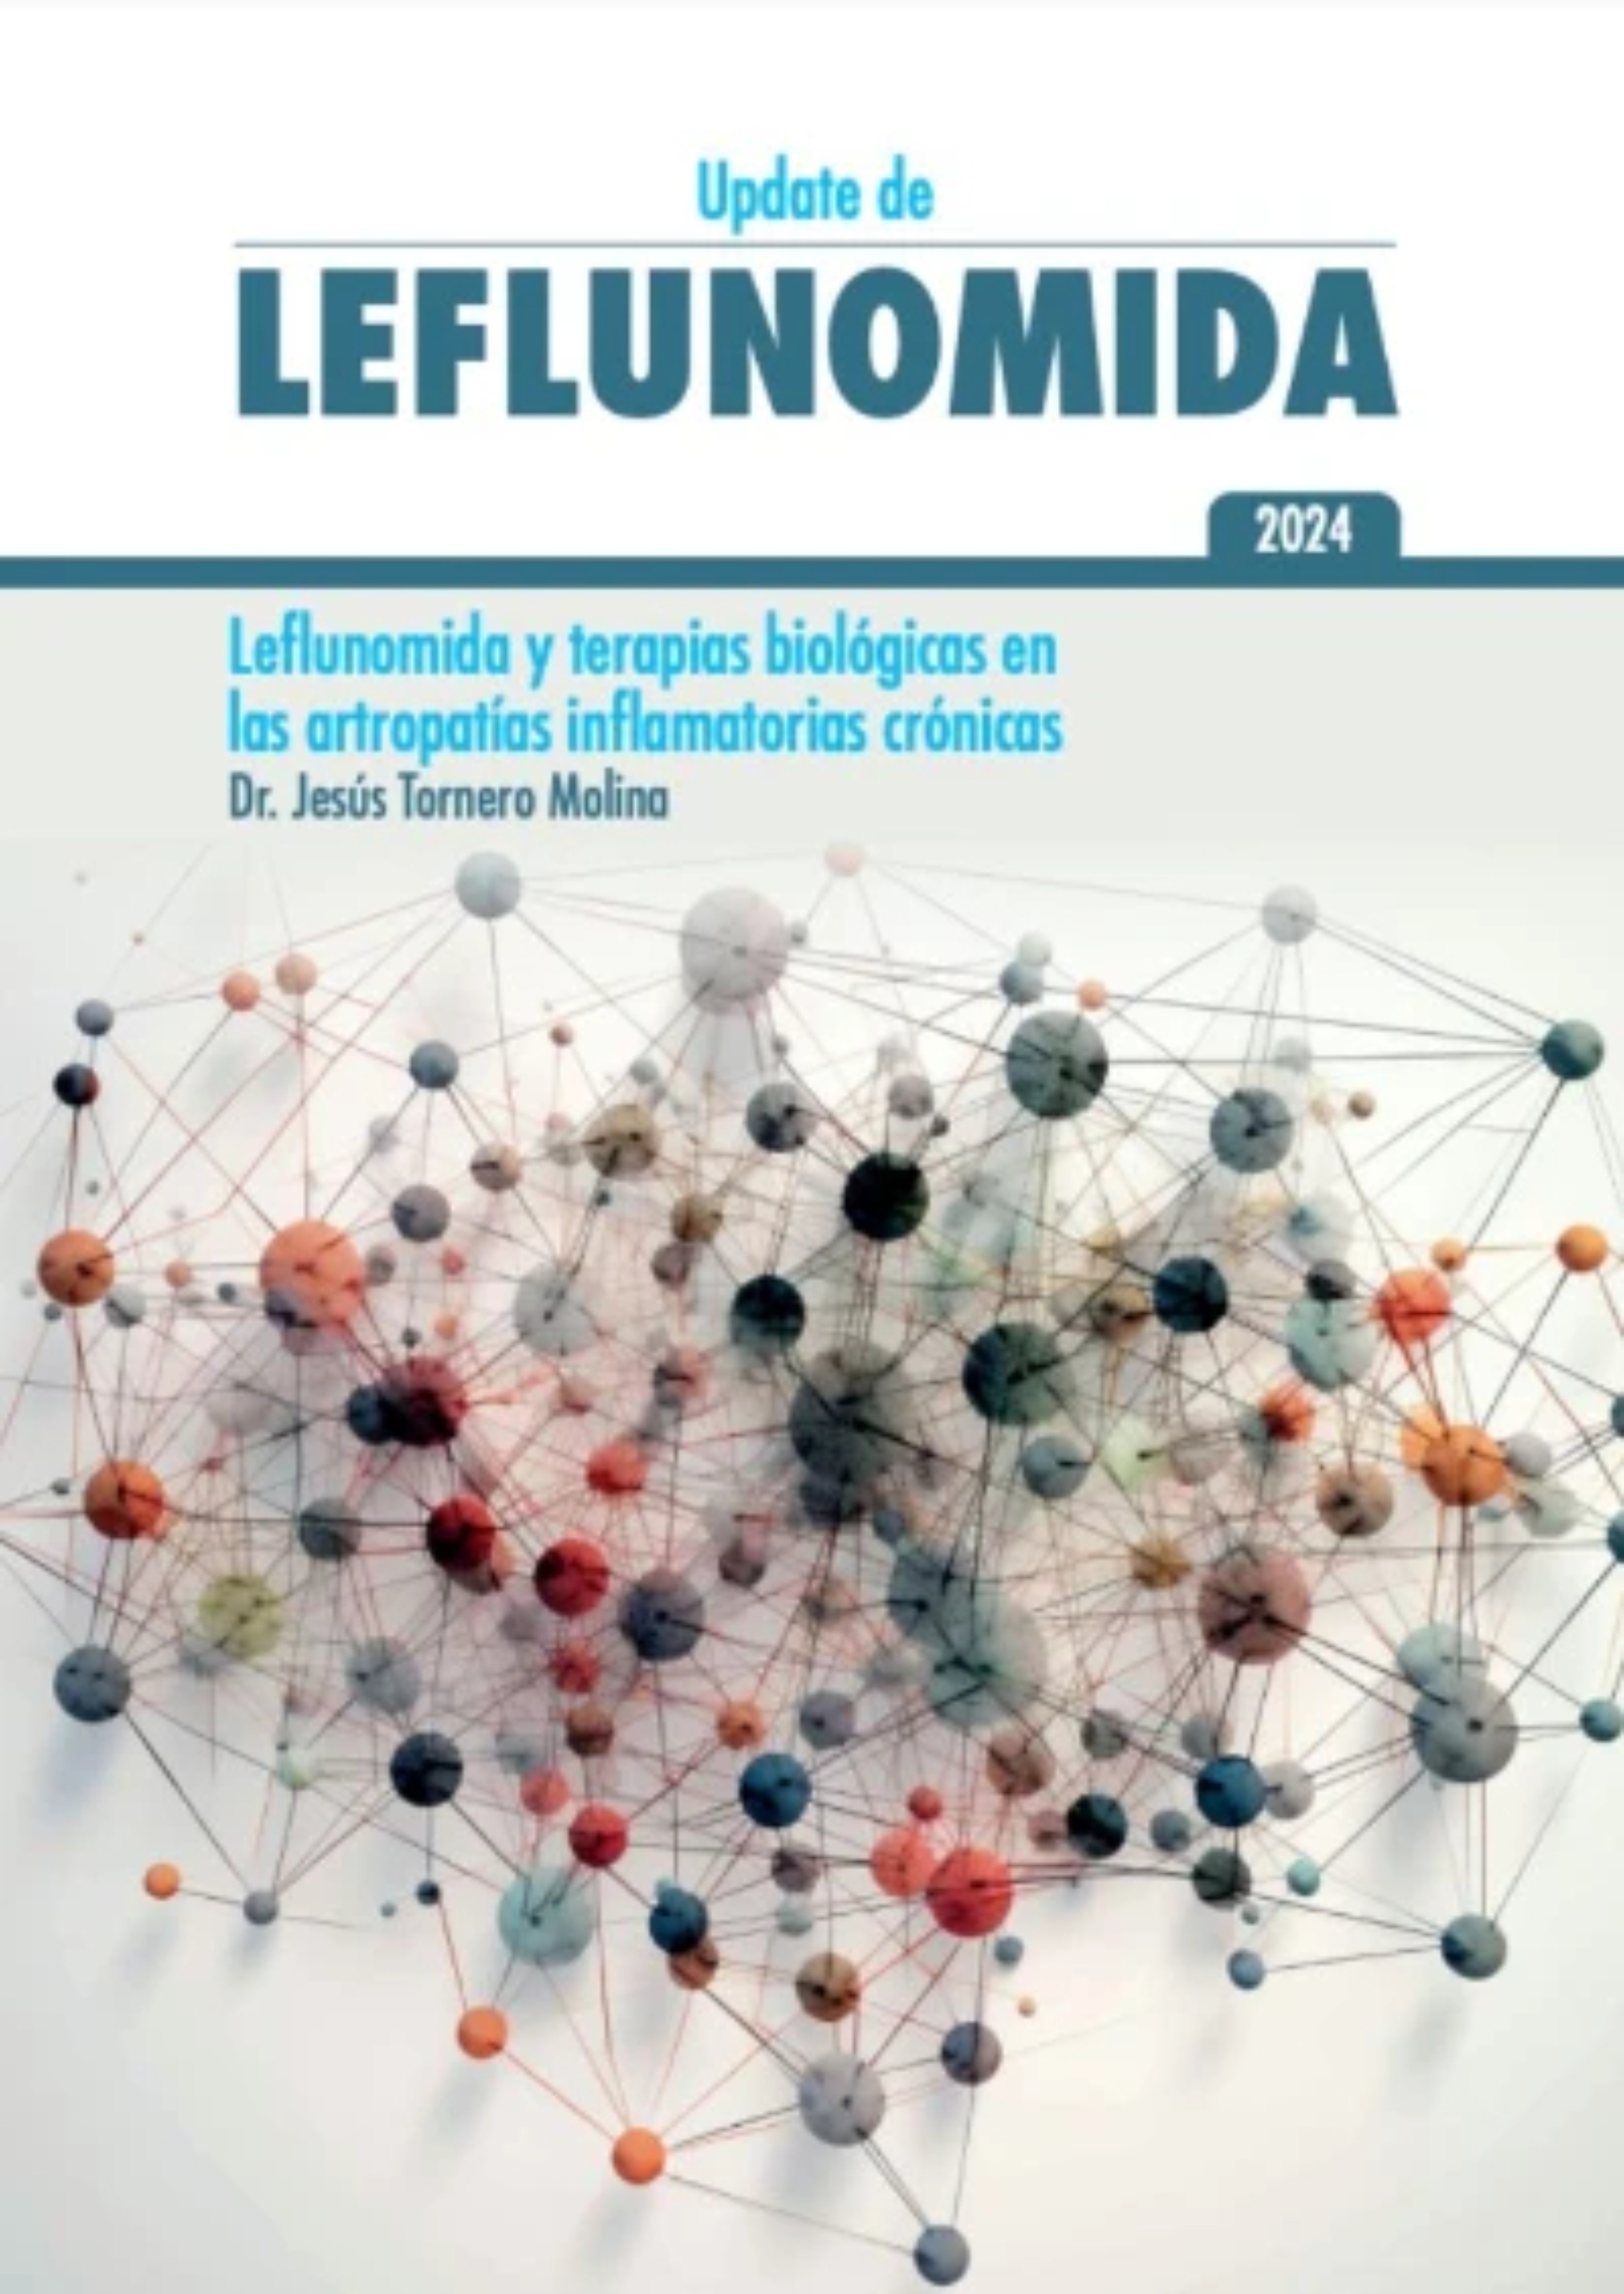 leflunomida-terapias biologicas-artropatias-hero2